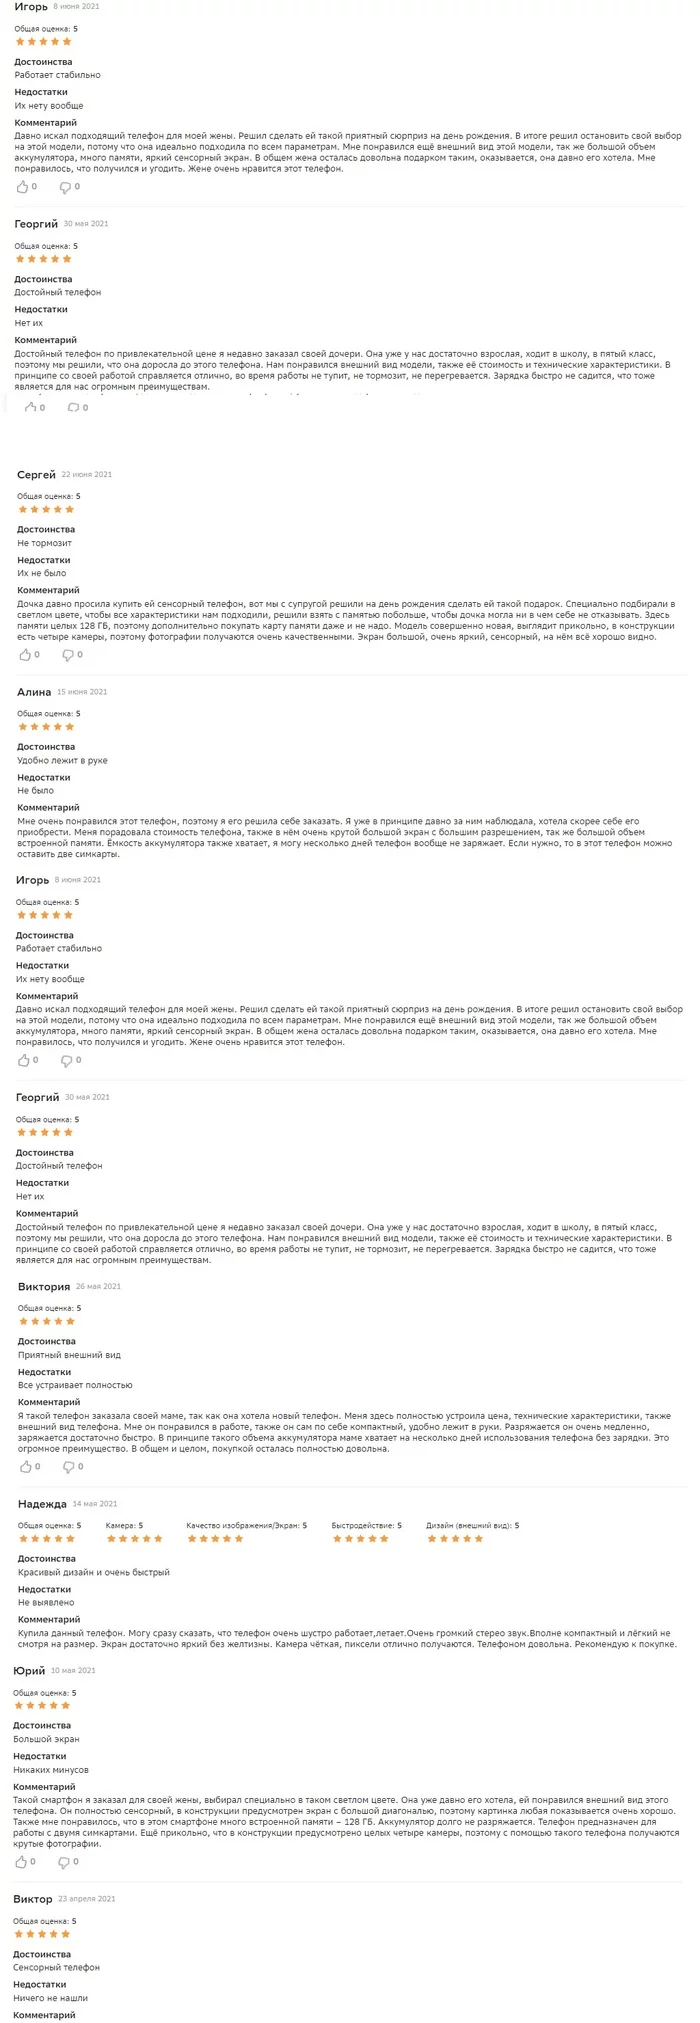 Reviews on Sbermarket - Sbermarket, Bots, Longpost